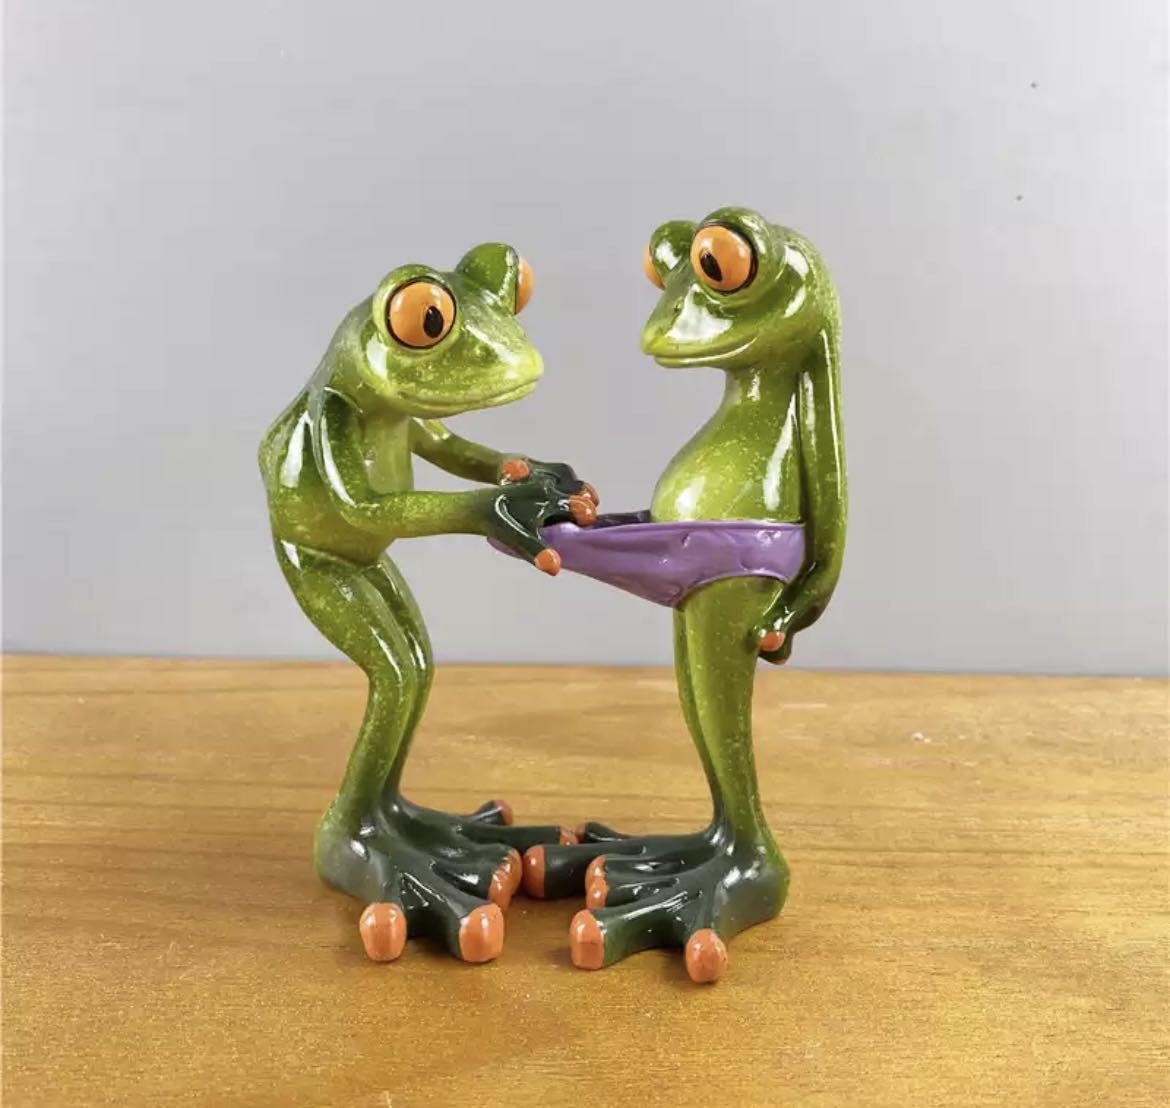 개구리 인형 레진 개구리 인형 장식품 인테리어 용품 인형 소품 상품 독특하고 귀여운 장식 놀이 1560, 핸드메이드 아이템, 내부, 잡화, 장식, 물체